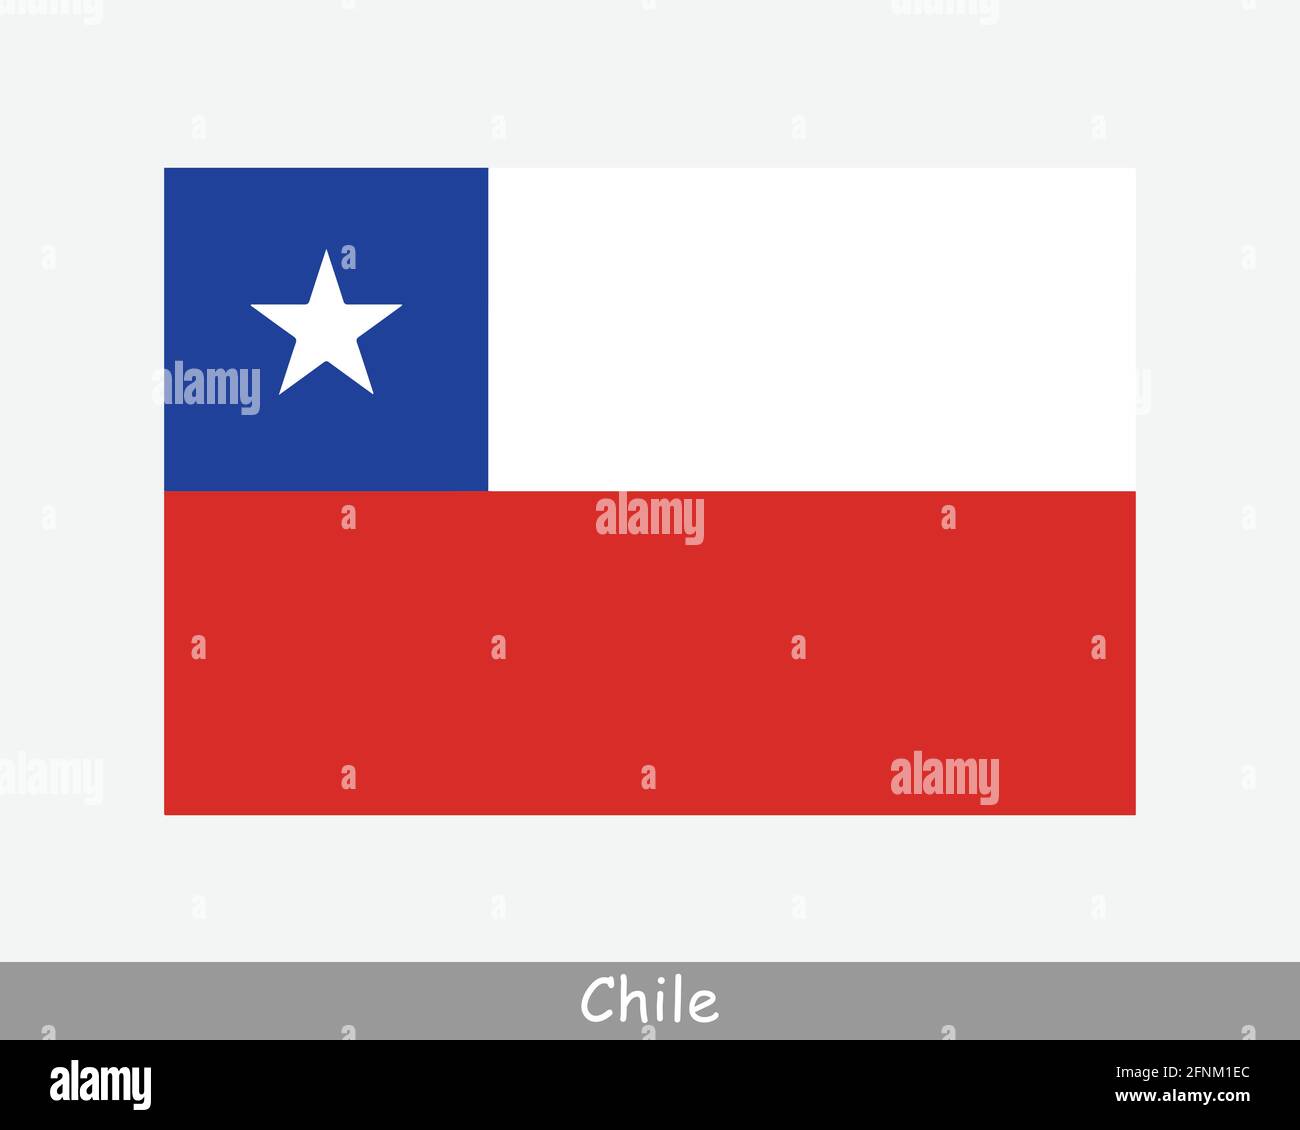 Nationalflagge von Chile. Chilenische Landesflagge. Republik Chile detailliertes Banner. EPS-Vektorgrafik Datei ausschneiden Stock Vektor